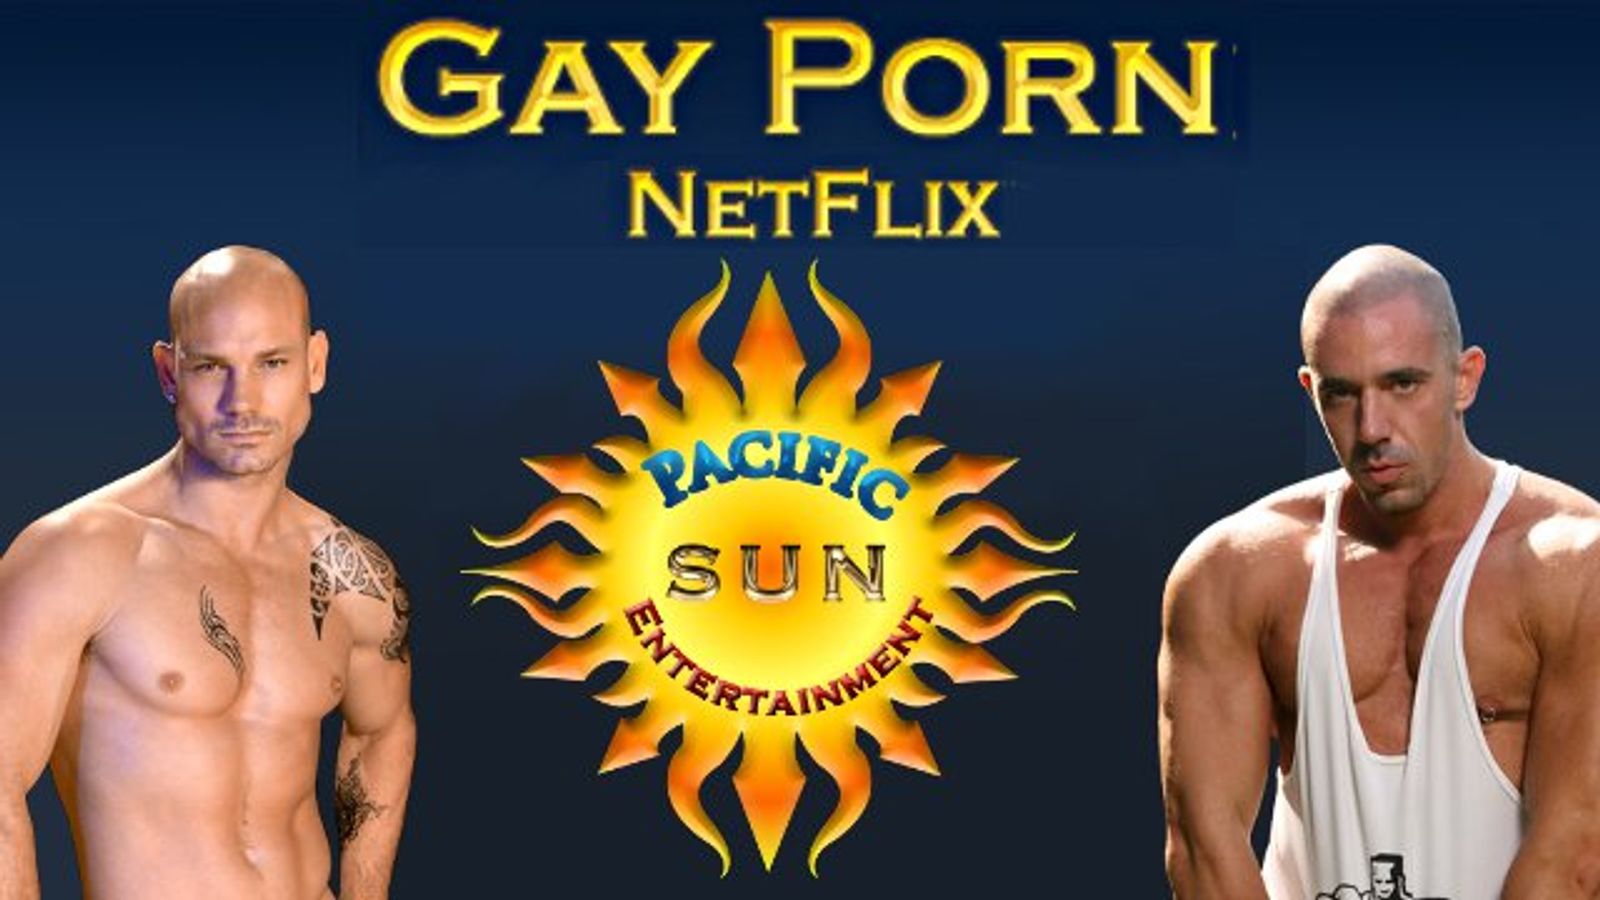 Pacific Sun Launches GayPornNetflix.com